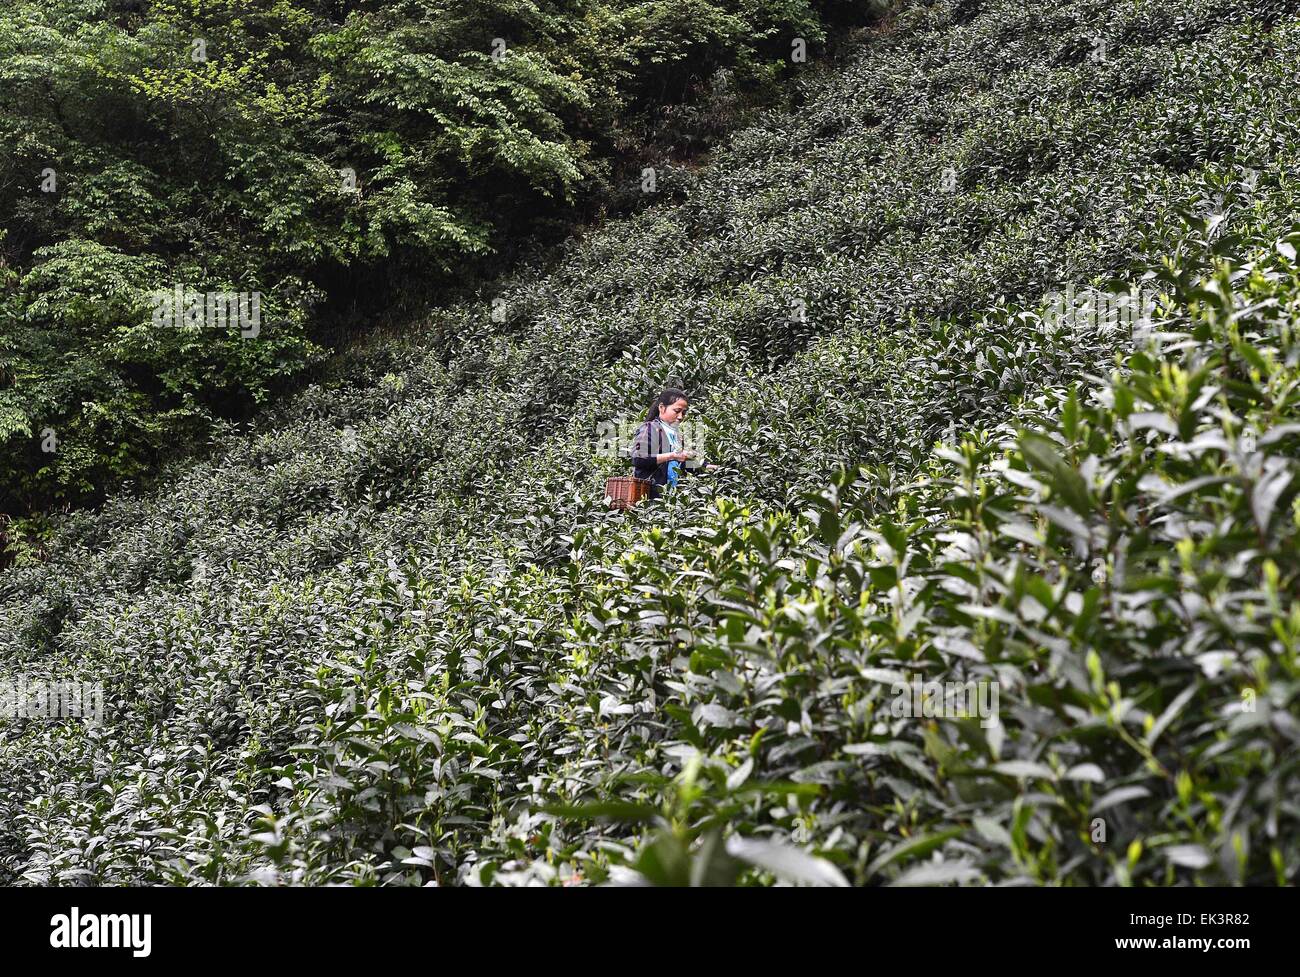 6 avril 2015 - Qiangdaohu, Zhejiang, République populaire de Chine - un agriculteur local la collecte de thé vert chinois dans les montagnes de Qiangdaohu, Province de Zhejiang en Chine orientale. (Crédit Image : © Marcio Machado/Zuma sur le fil) Banque D'Images